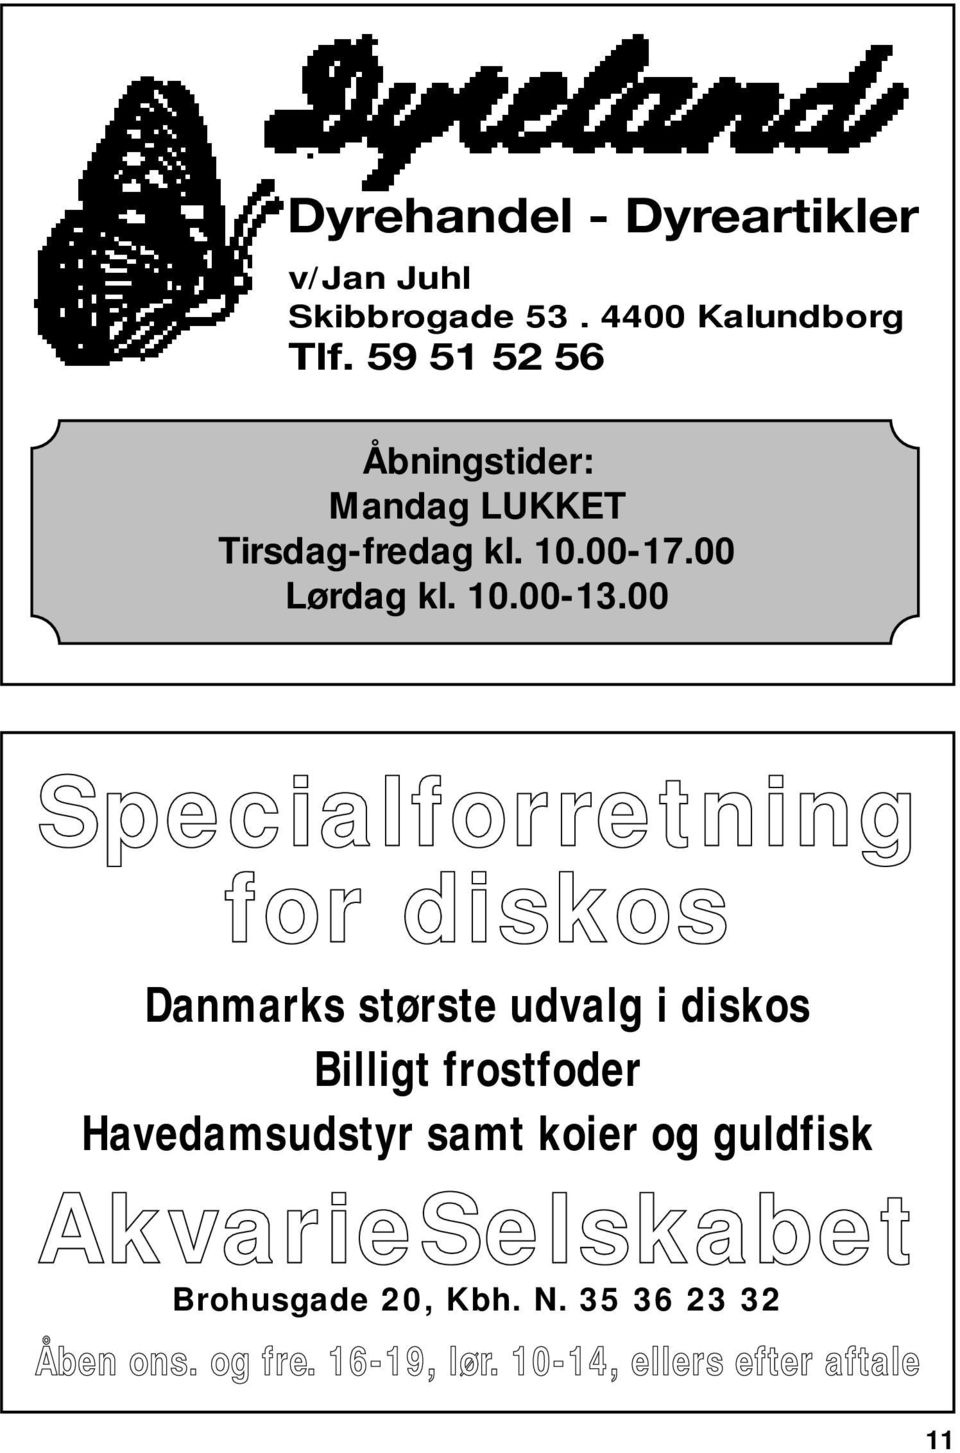 00 Specialforretning for diskos Danmarks største udvalg i diskos Billigt frostfoder Havedamsudstyr